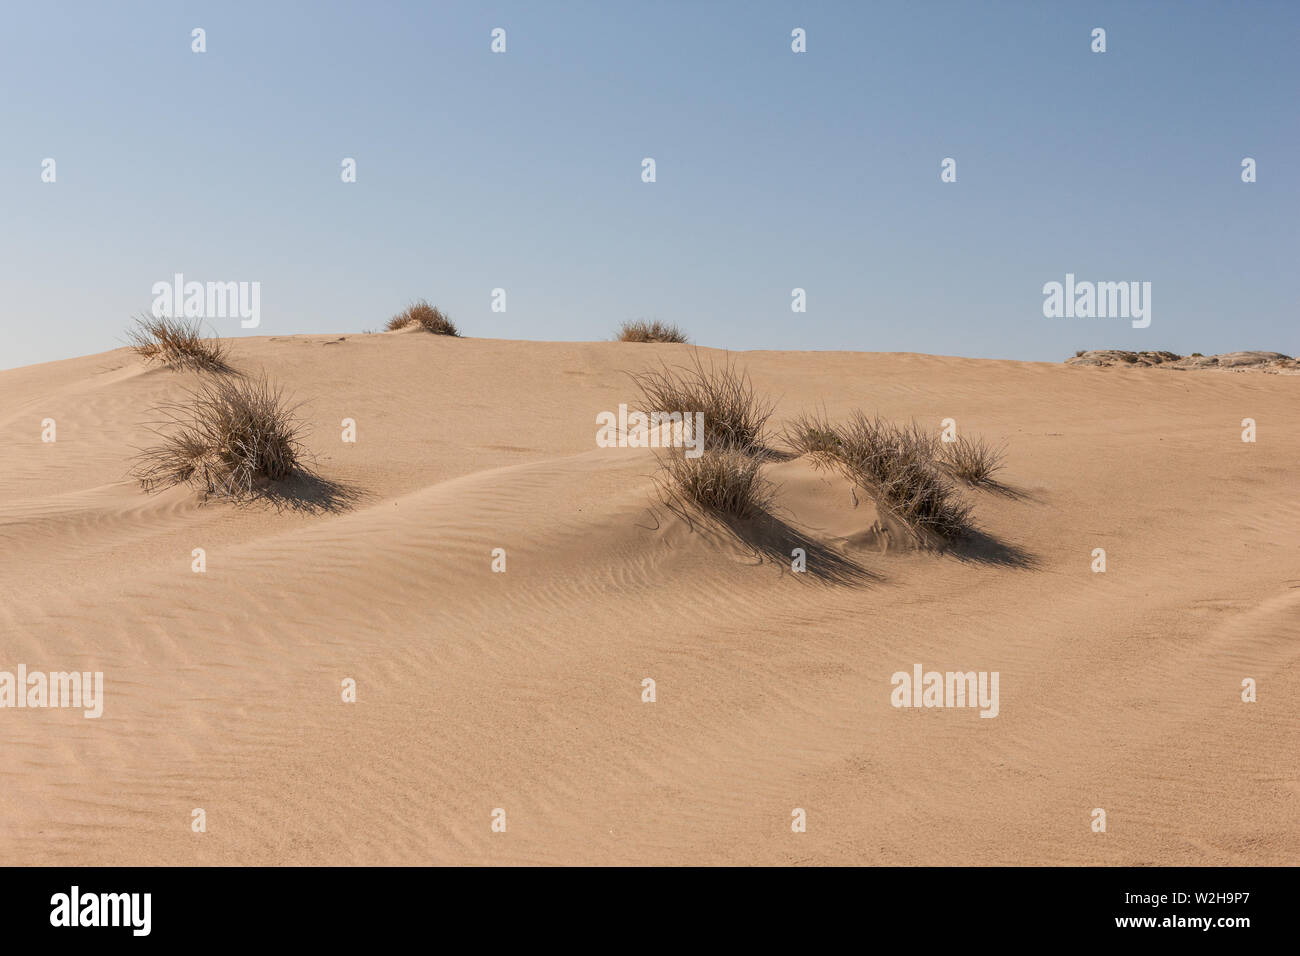 Sand dunes at Kolmanskop, Namibia Stock Photo